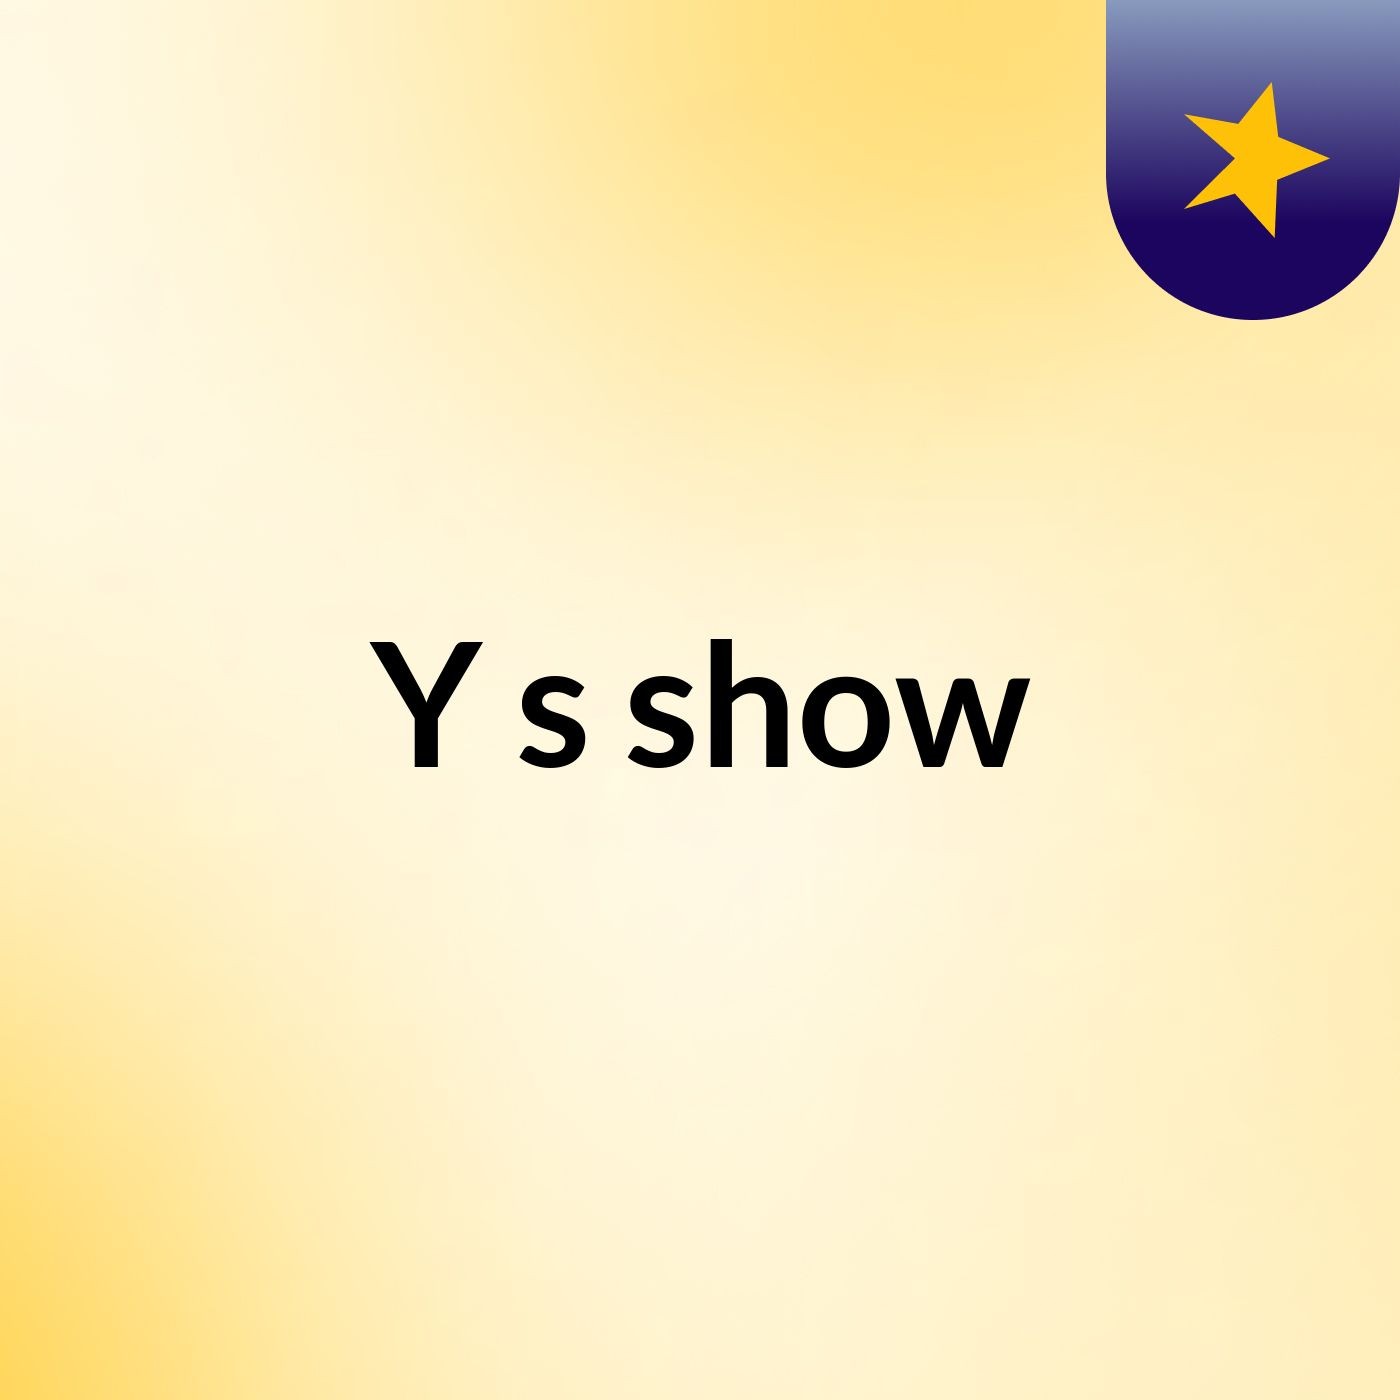 Y's show